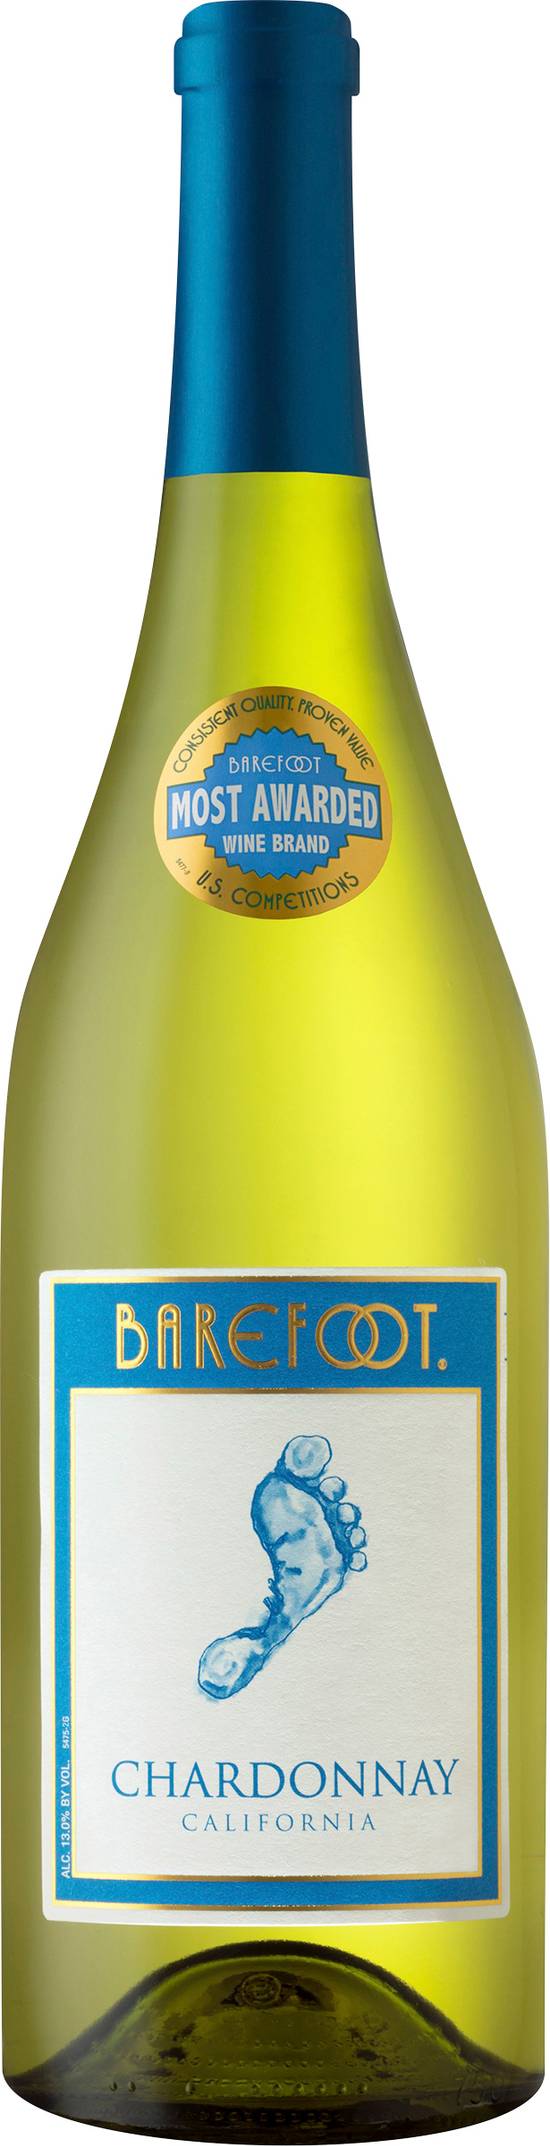 Barefoot Chardonnay White Wine (750 ml)